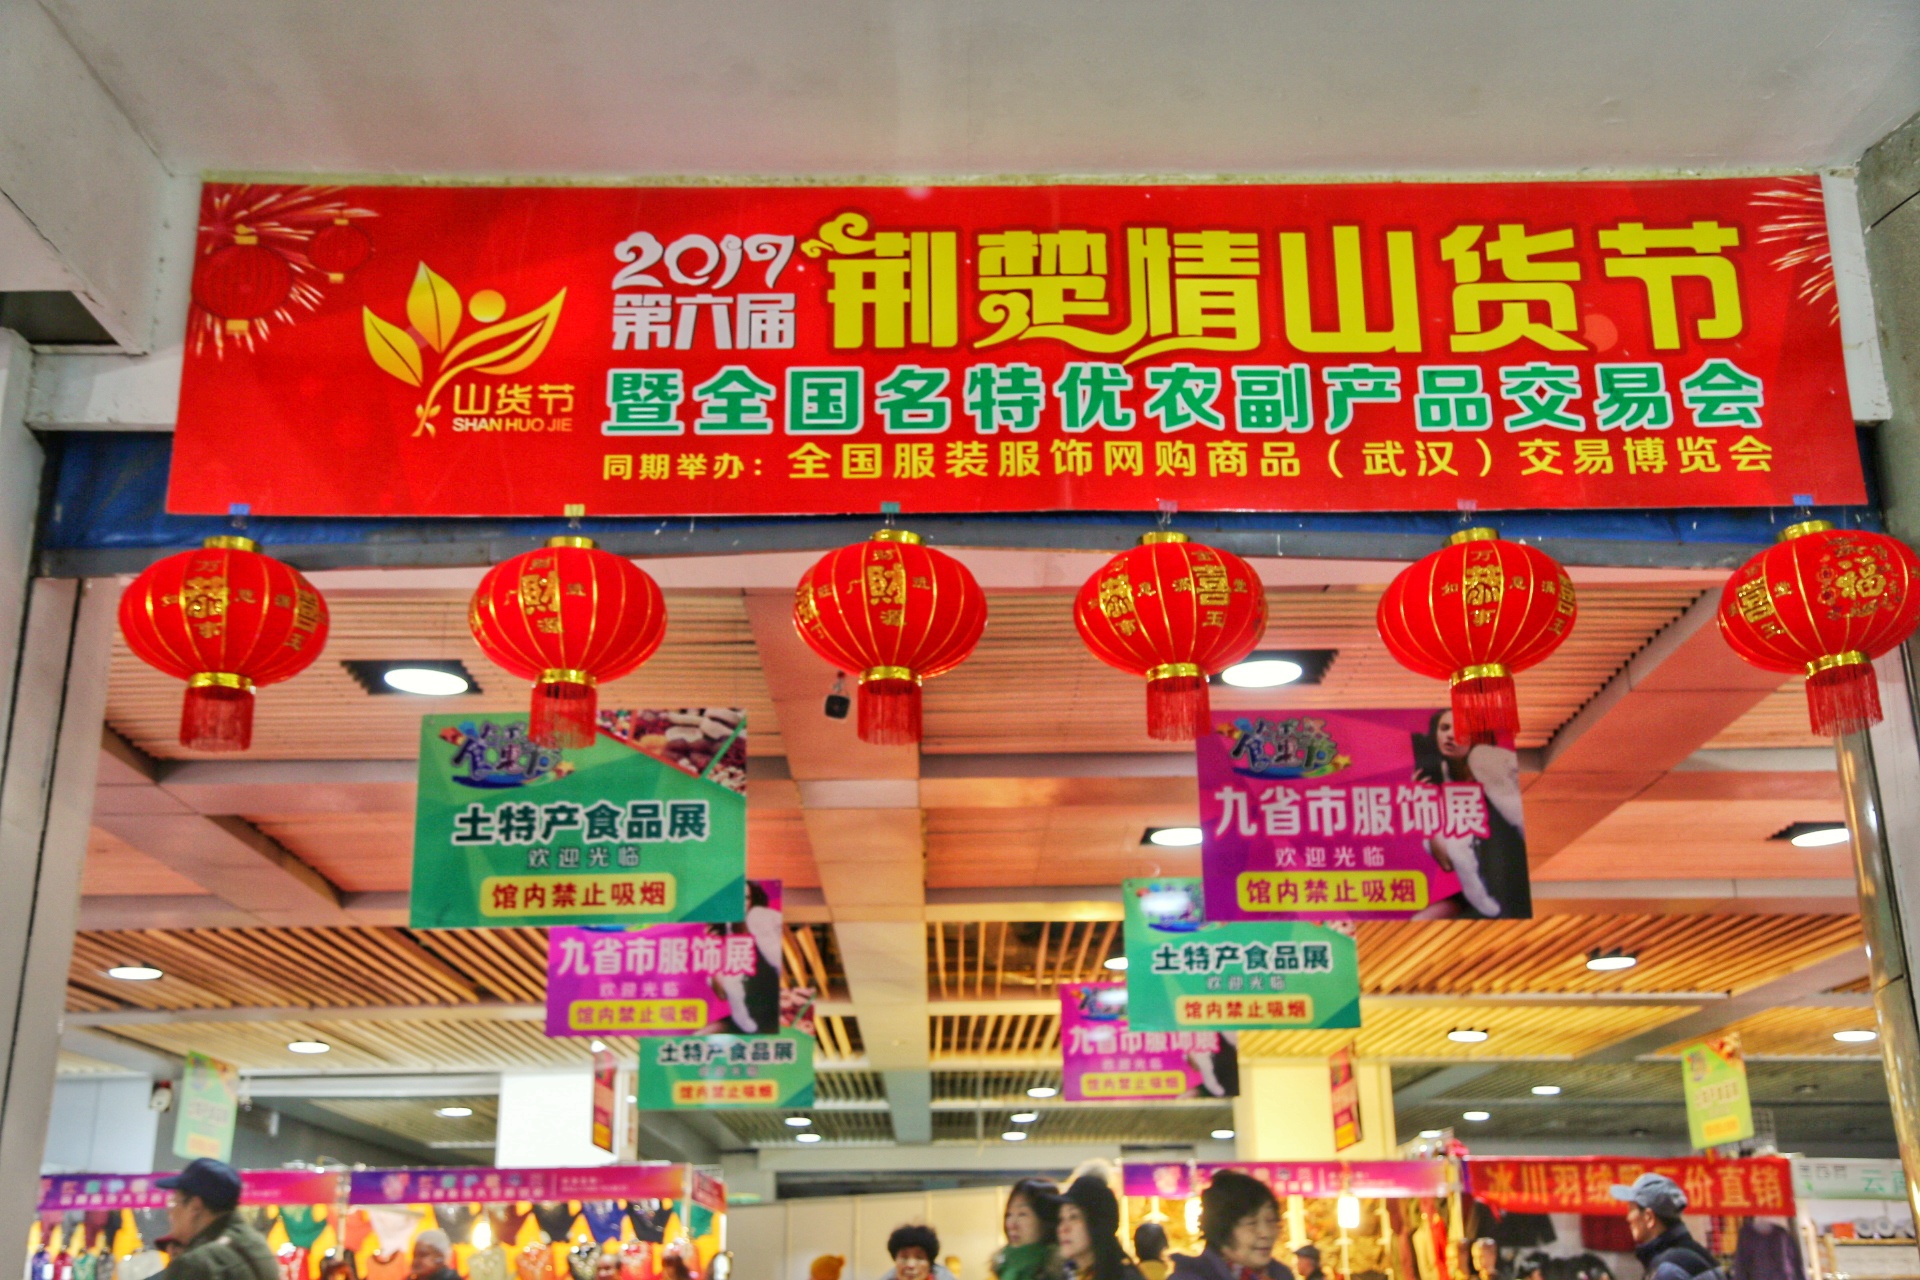 2016年12月28日至2017年1月12日,武汉国际会展中心第6届荆楚情山货节